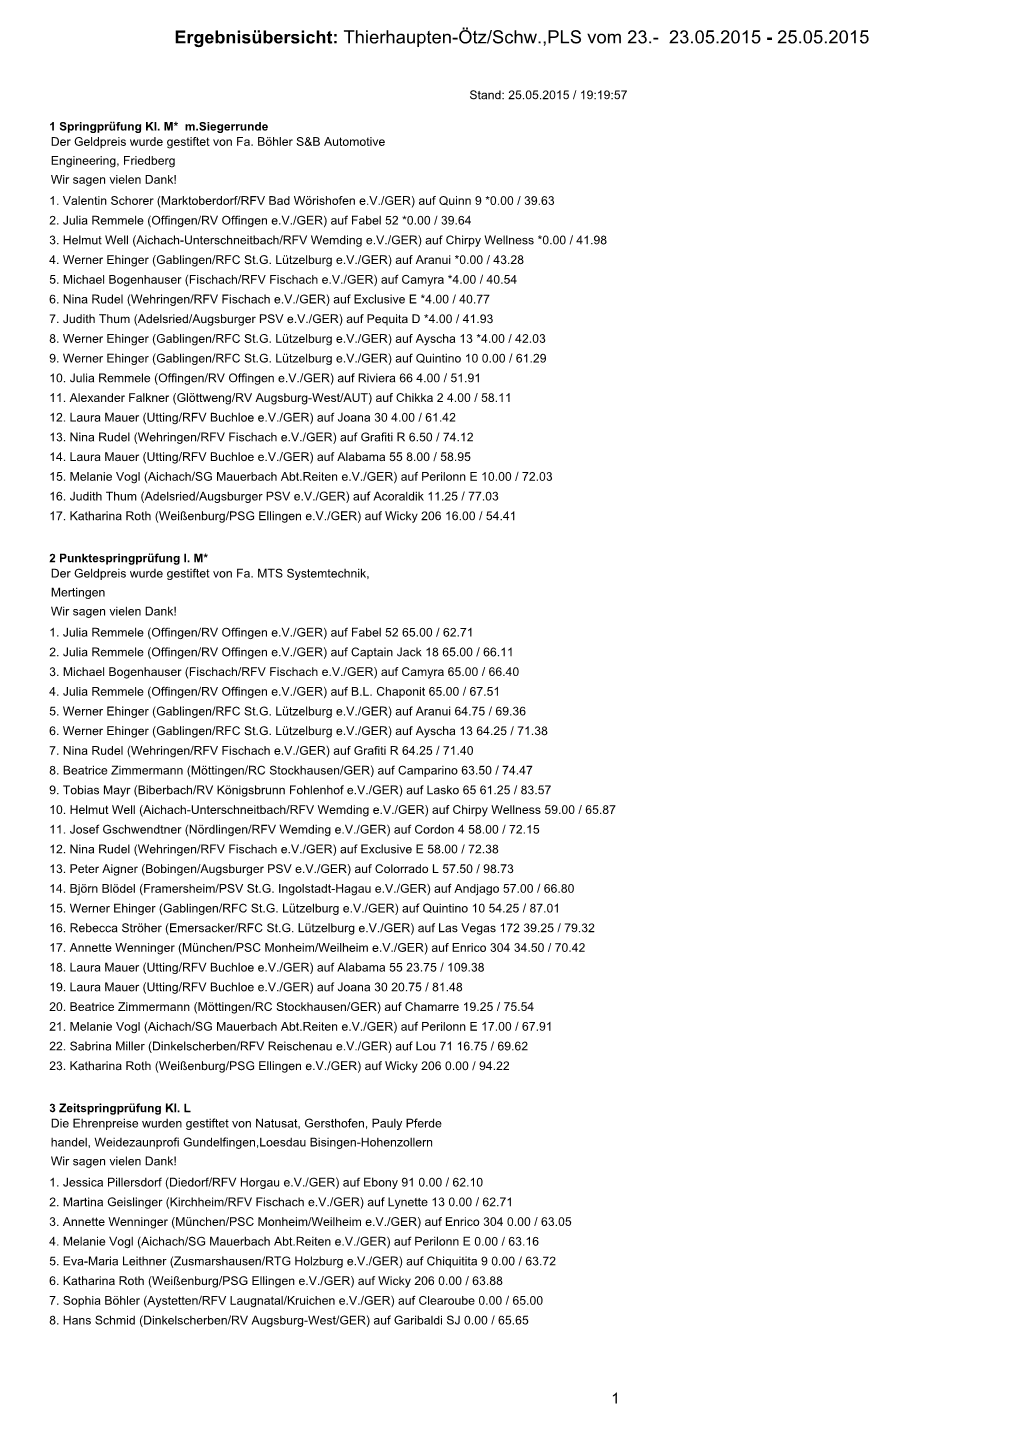 Ergebnisübersicht: Thierhaupten-Ötz/Schw.,PLS Vom 23.- 23.05.2015 - 25.05.2015